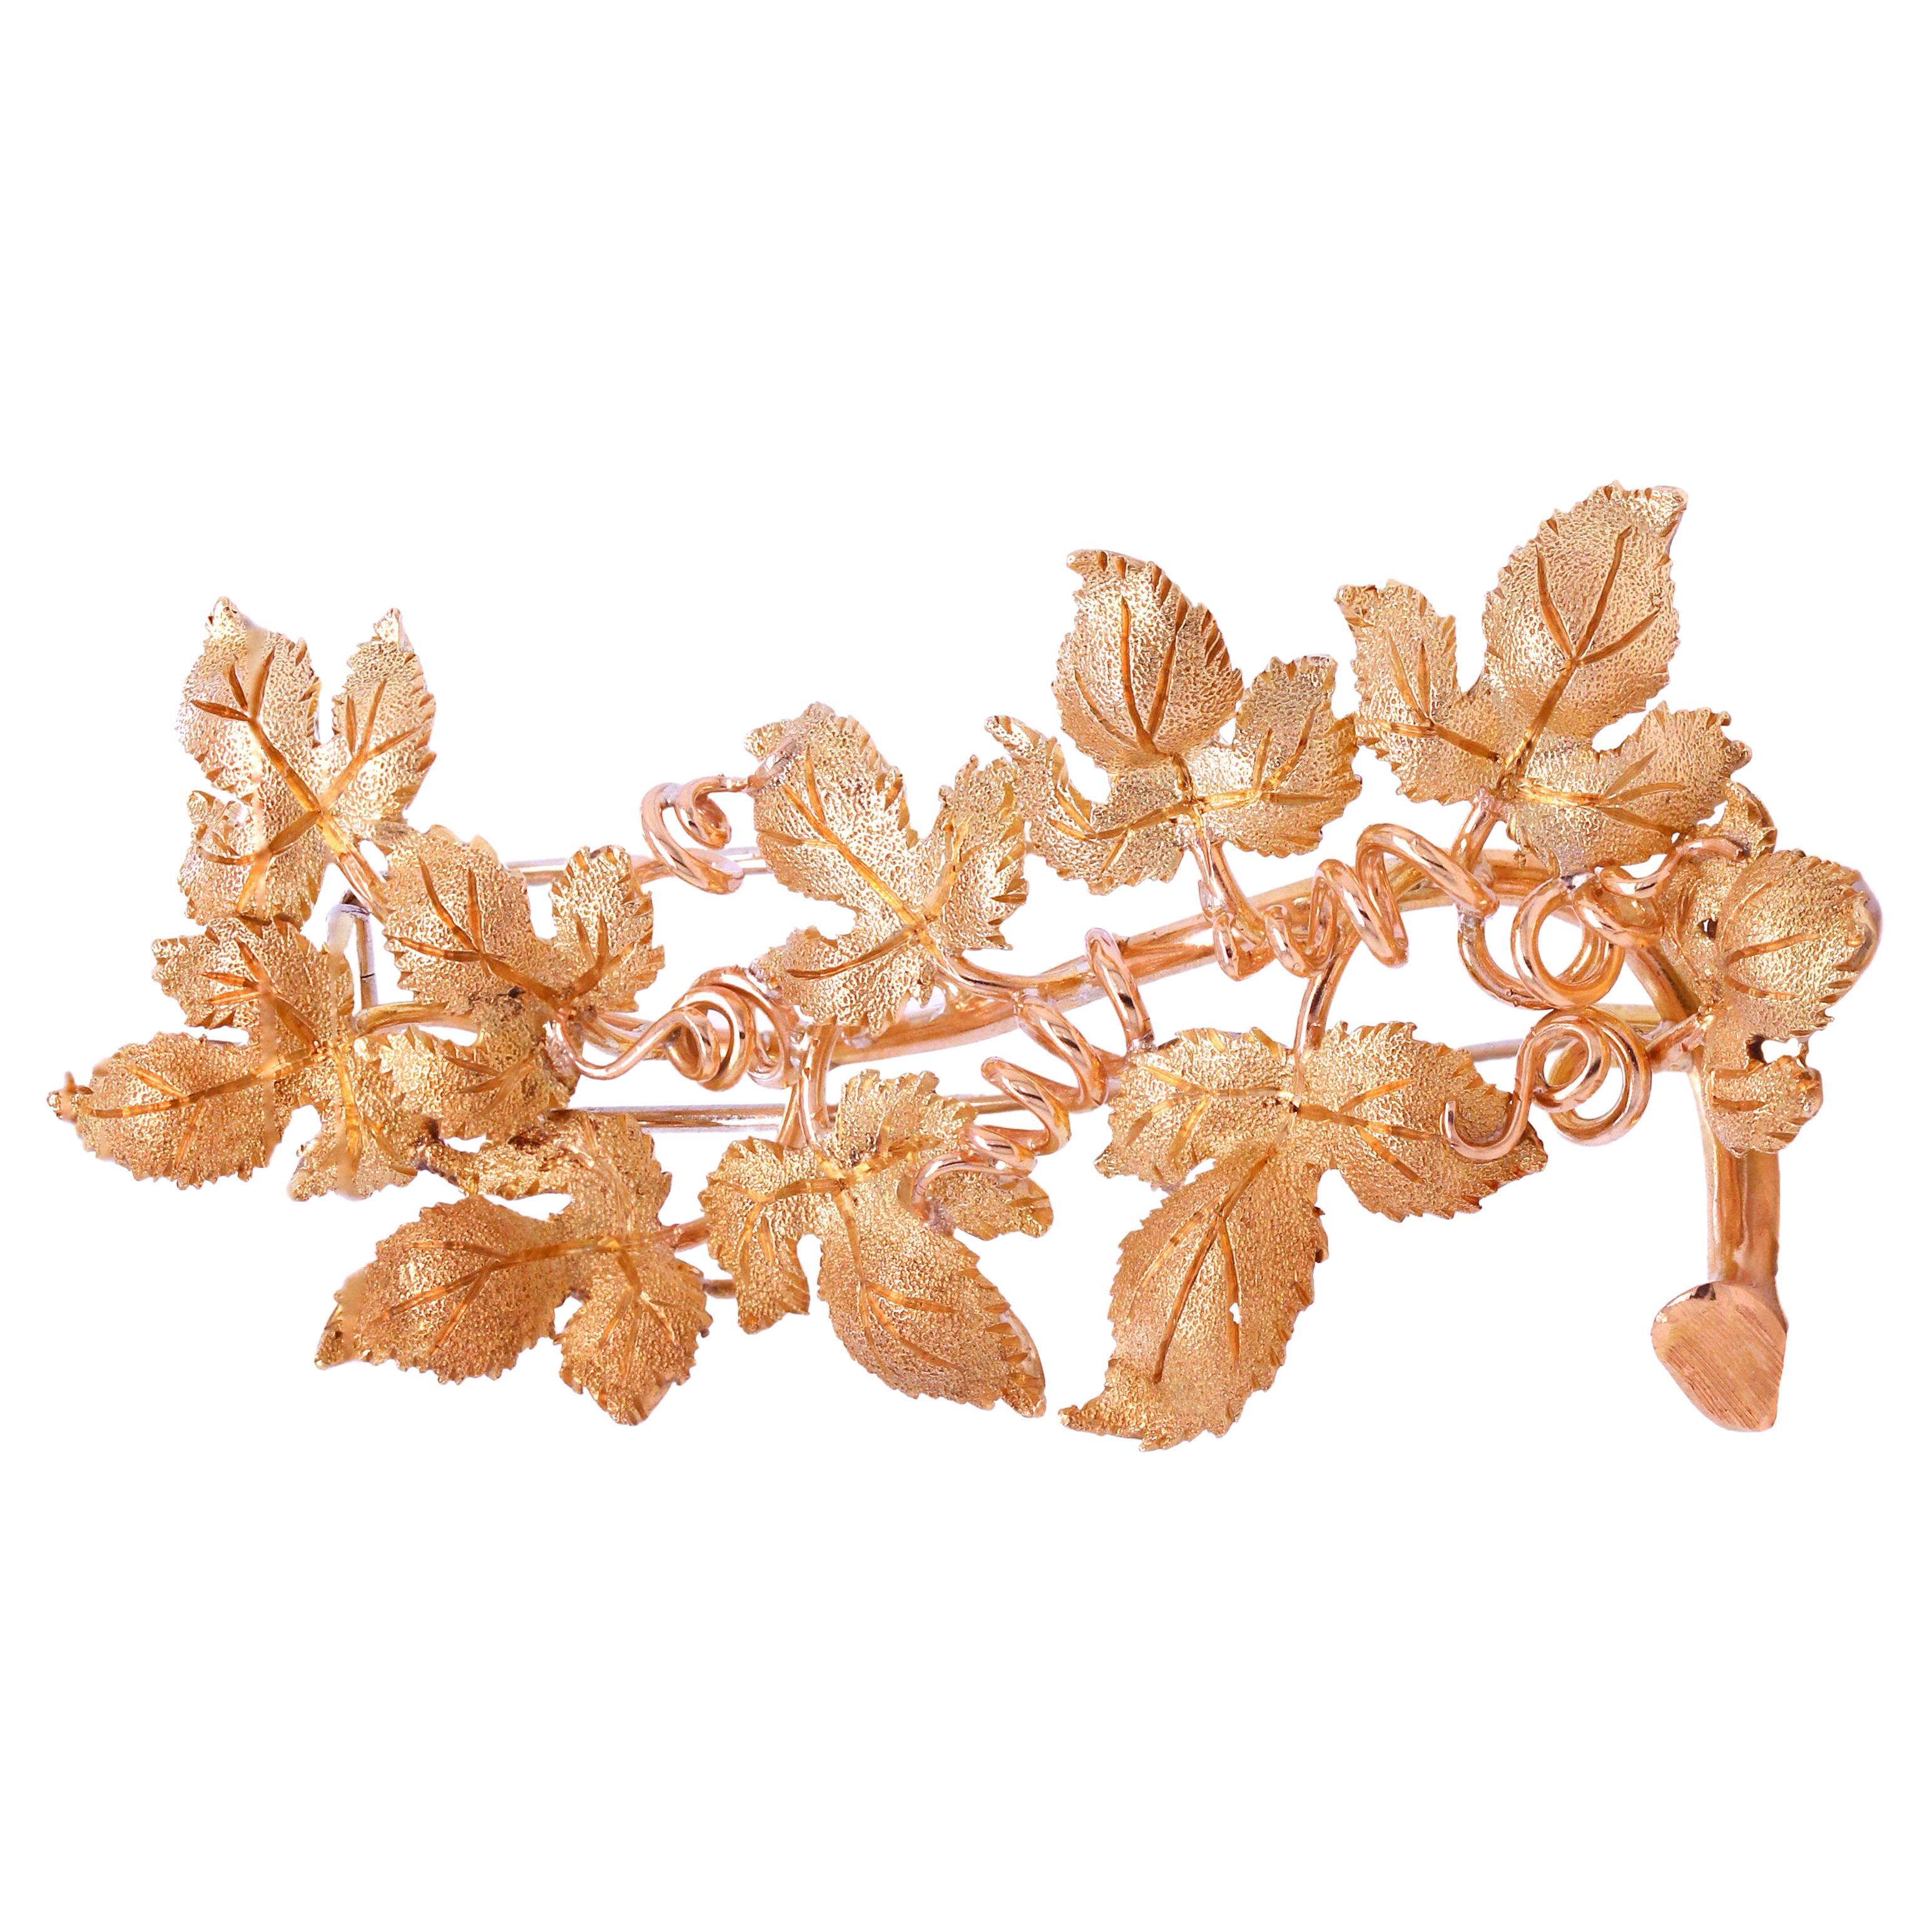 18 Karat Gelbgold Traubenwein Blumenmotiv Brosche Anstecknadel Matte Oberfläche